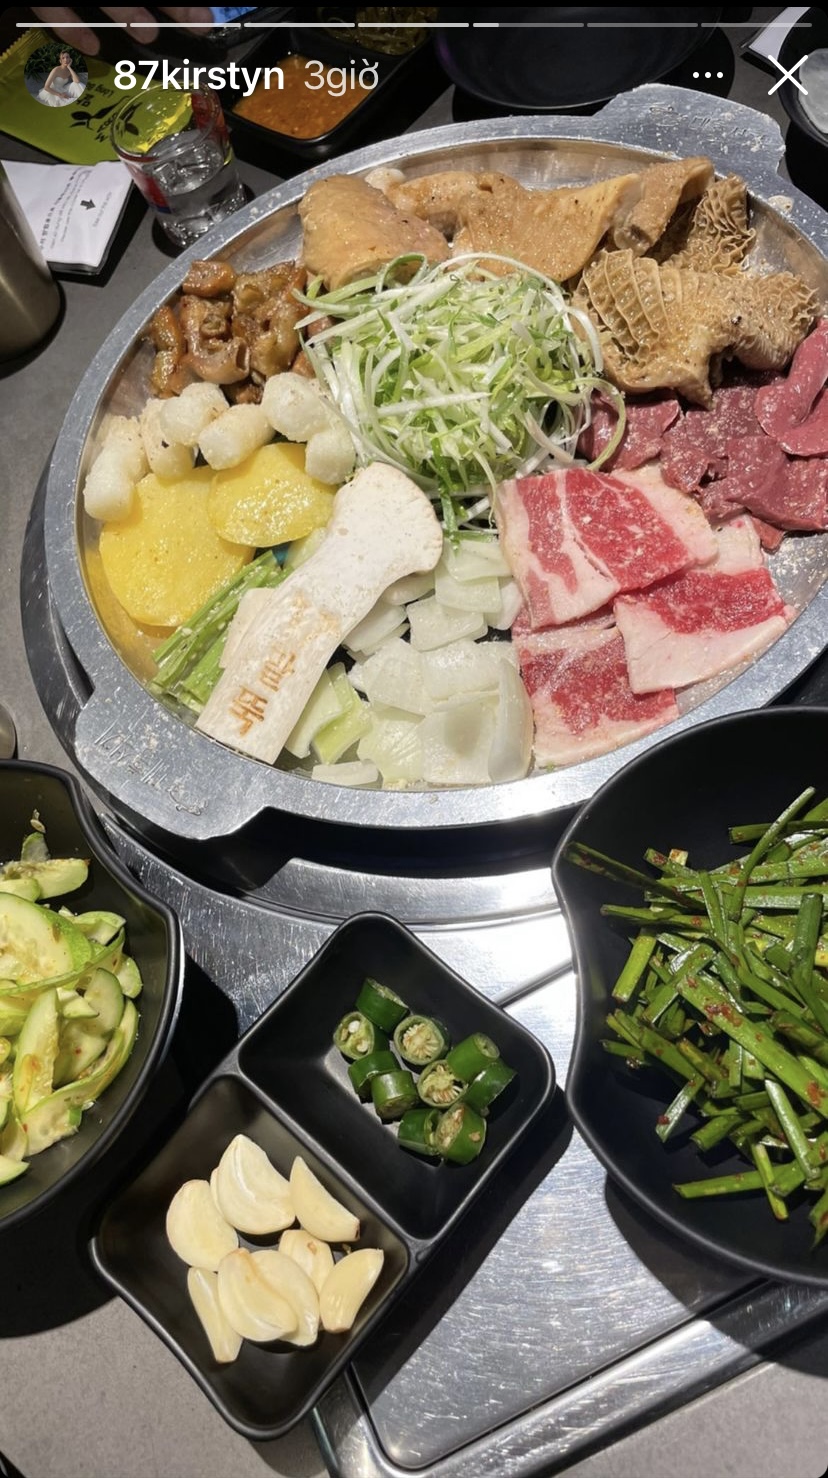 Yến Trang - Yến Nhi hôm nay có món nướng kiểu Hàn ngập đồ ăn như thịt, bánh gạo, rau...